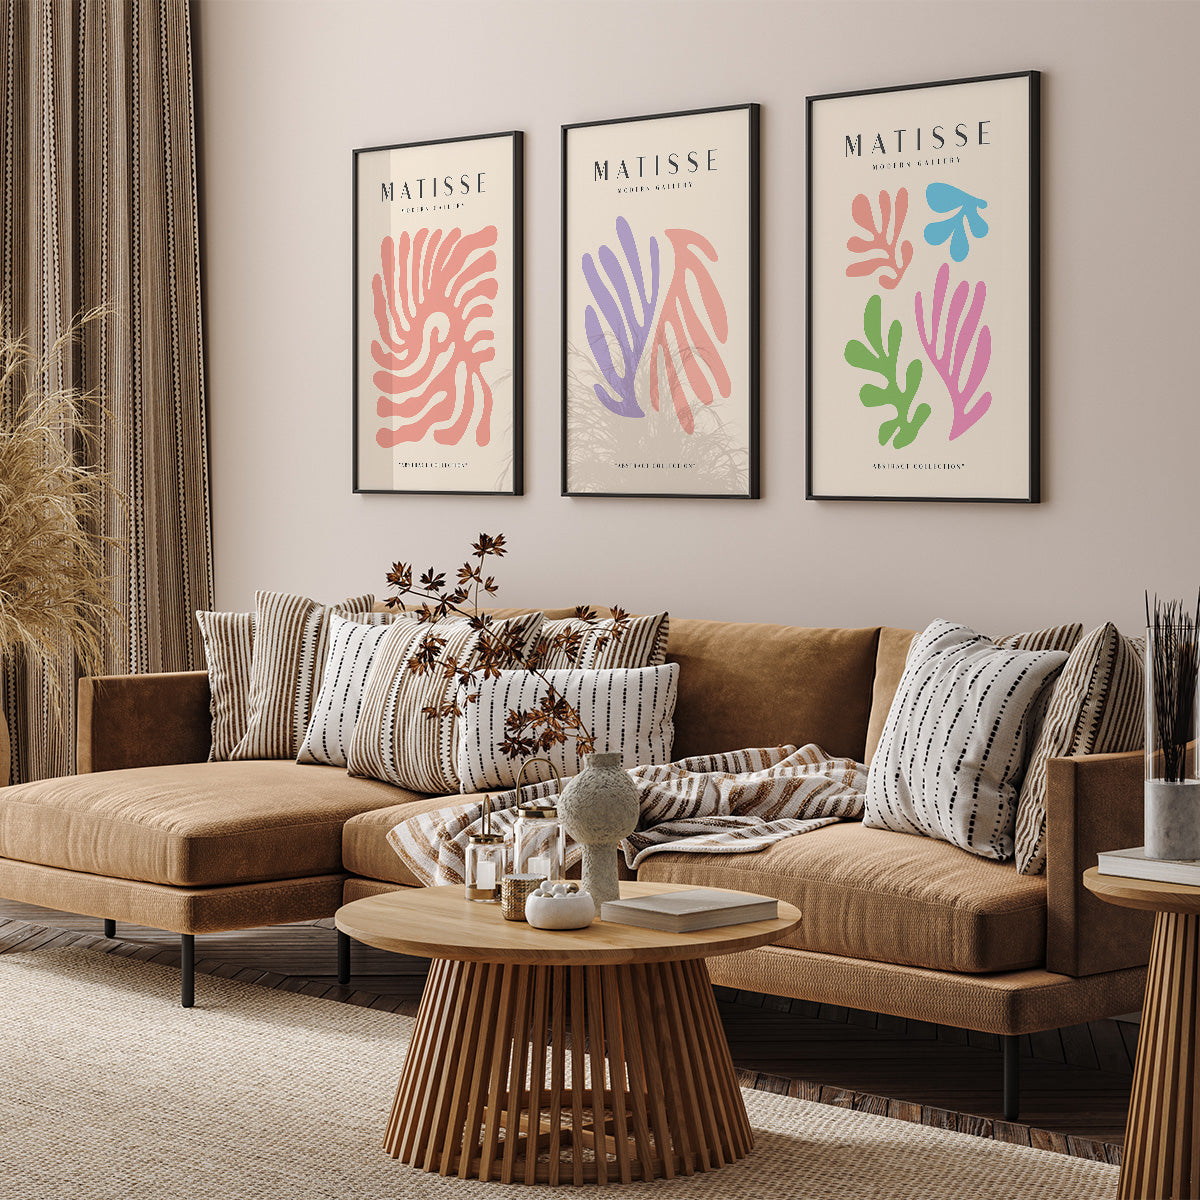 Matisse plakater på væg i stue over sofa